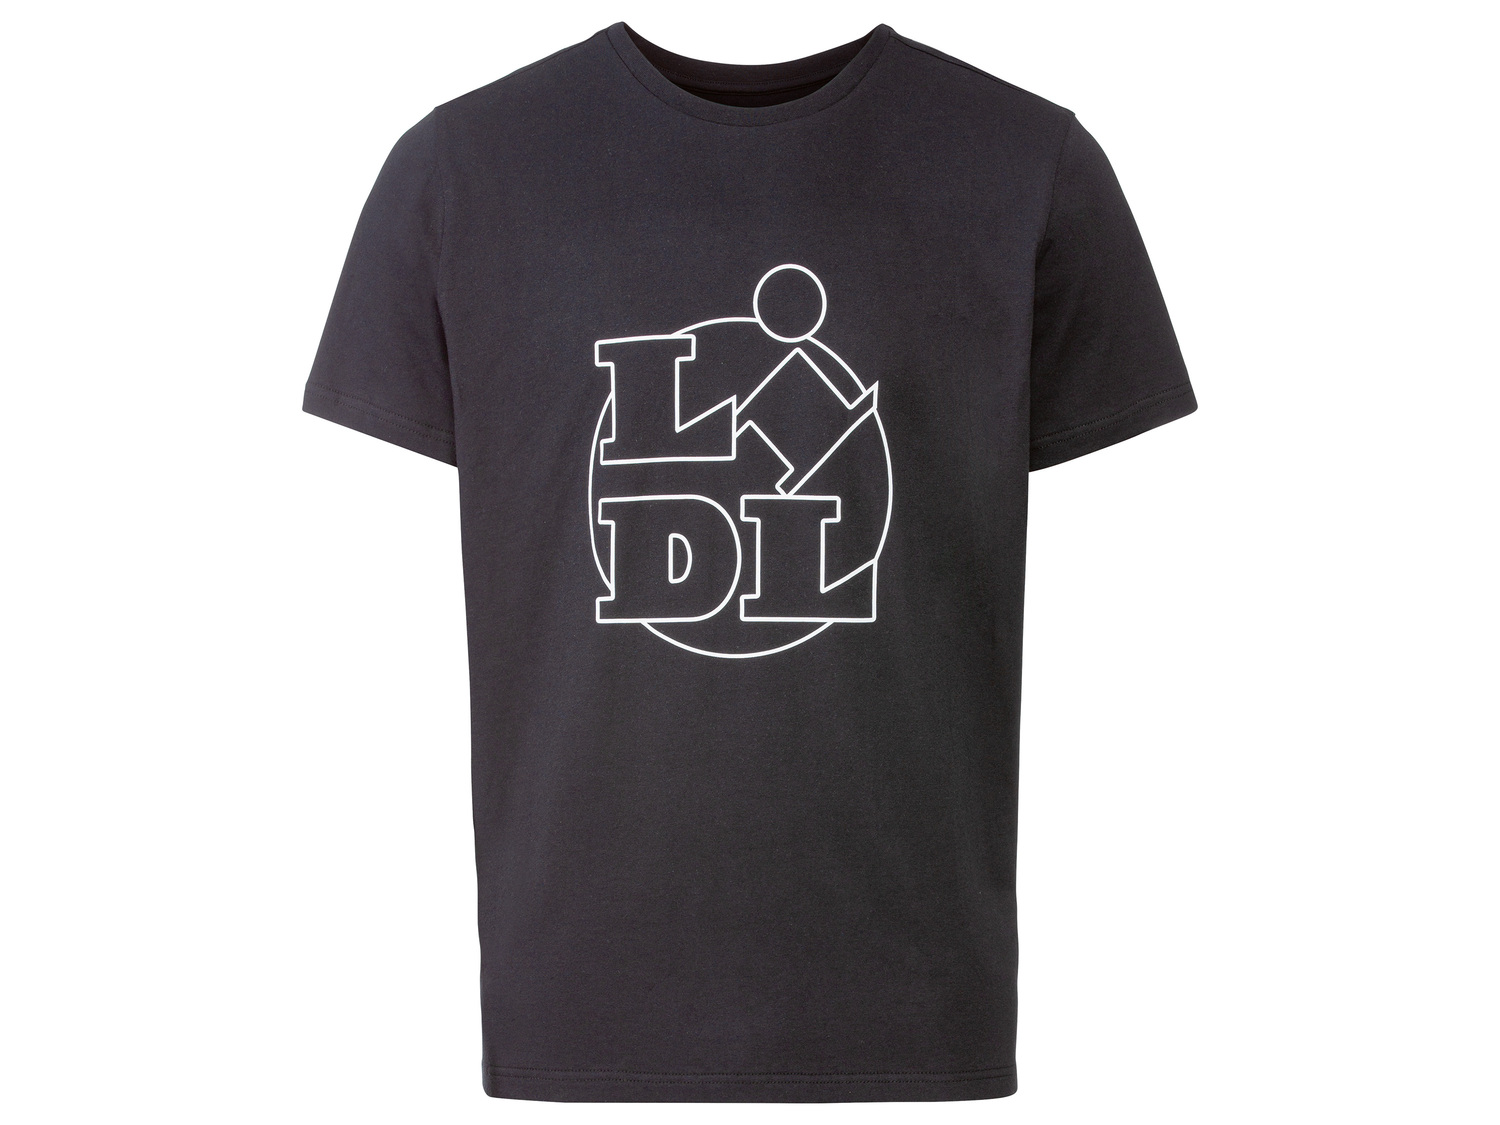 T-shirt LIDL femme ou homme , le prix 4.99 € 
- Quantités limitées à 30 000 ...